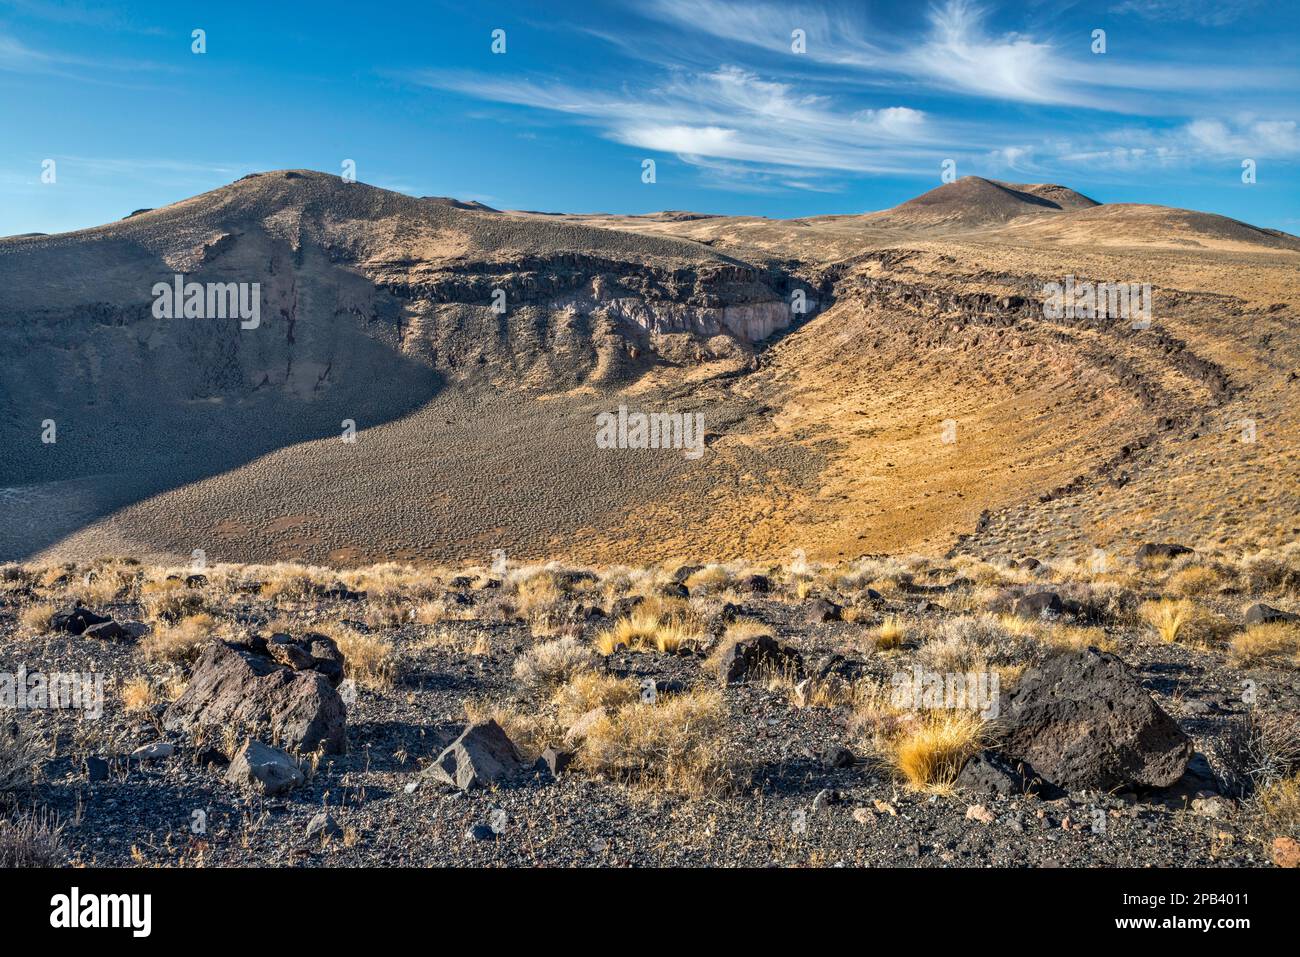 Rocce basaltiche sul bordo della caldera vulcanica al Lunar Crater National Natural Landmark, Nevada, USA Foto Stock